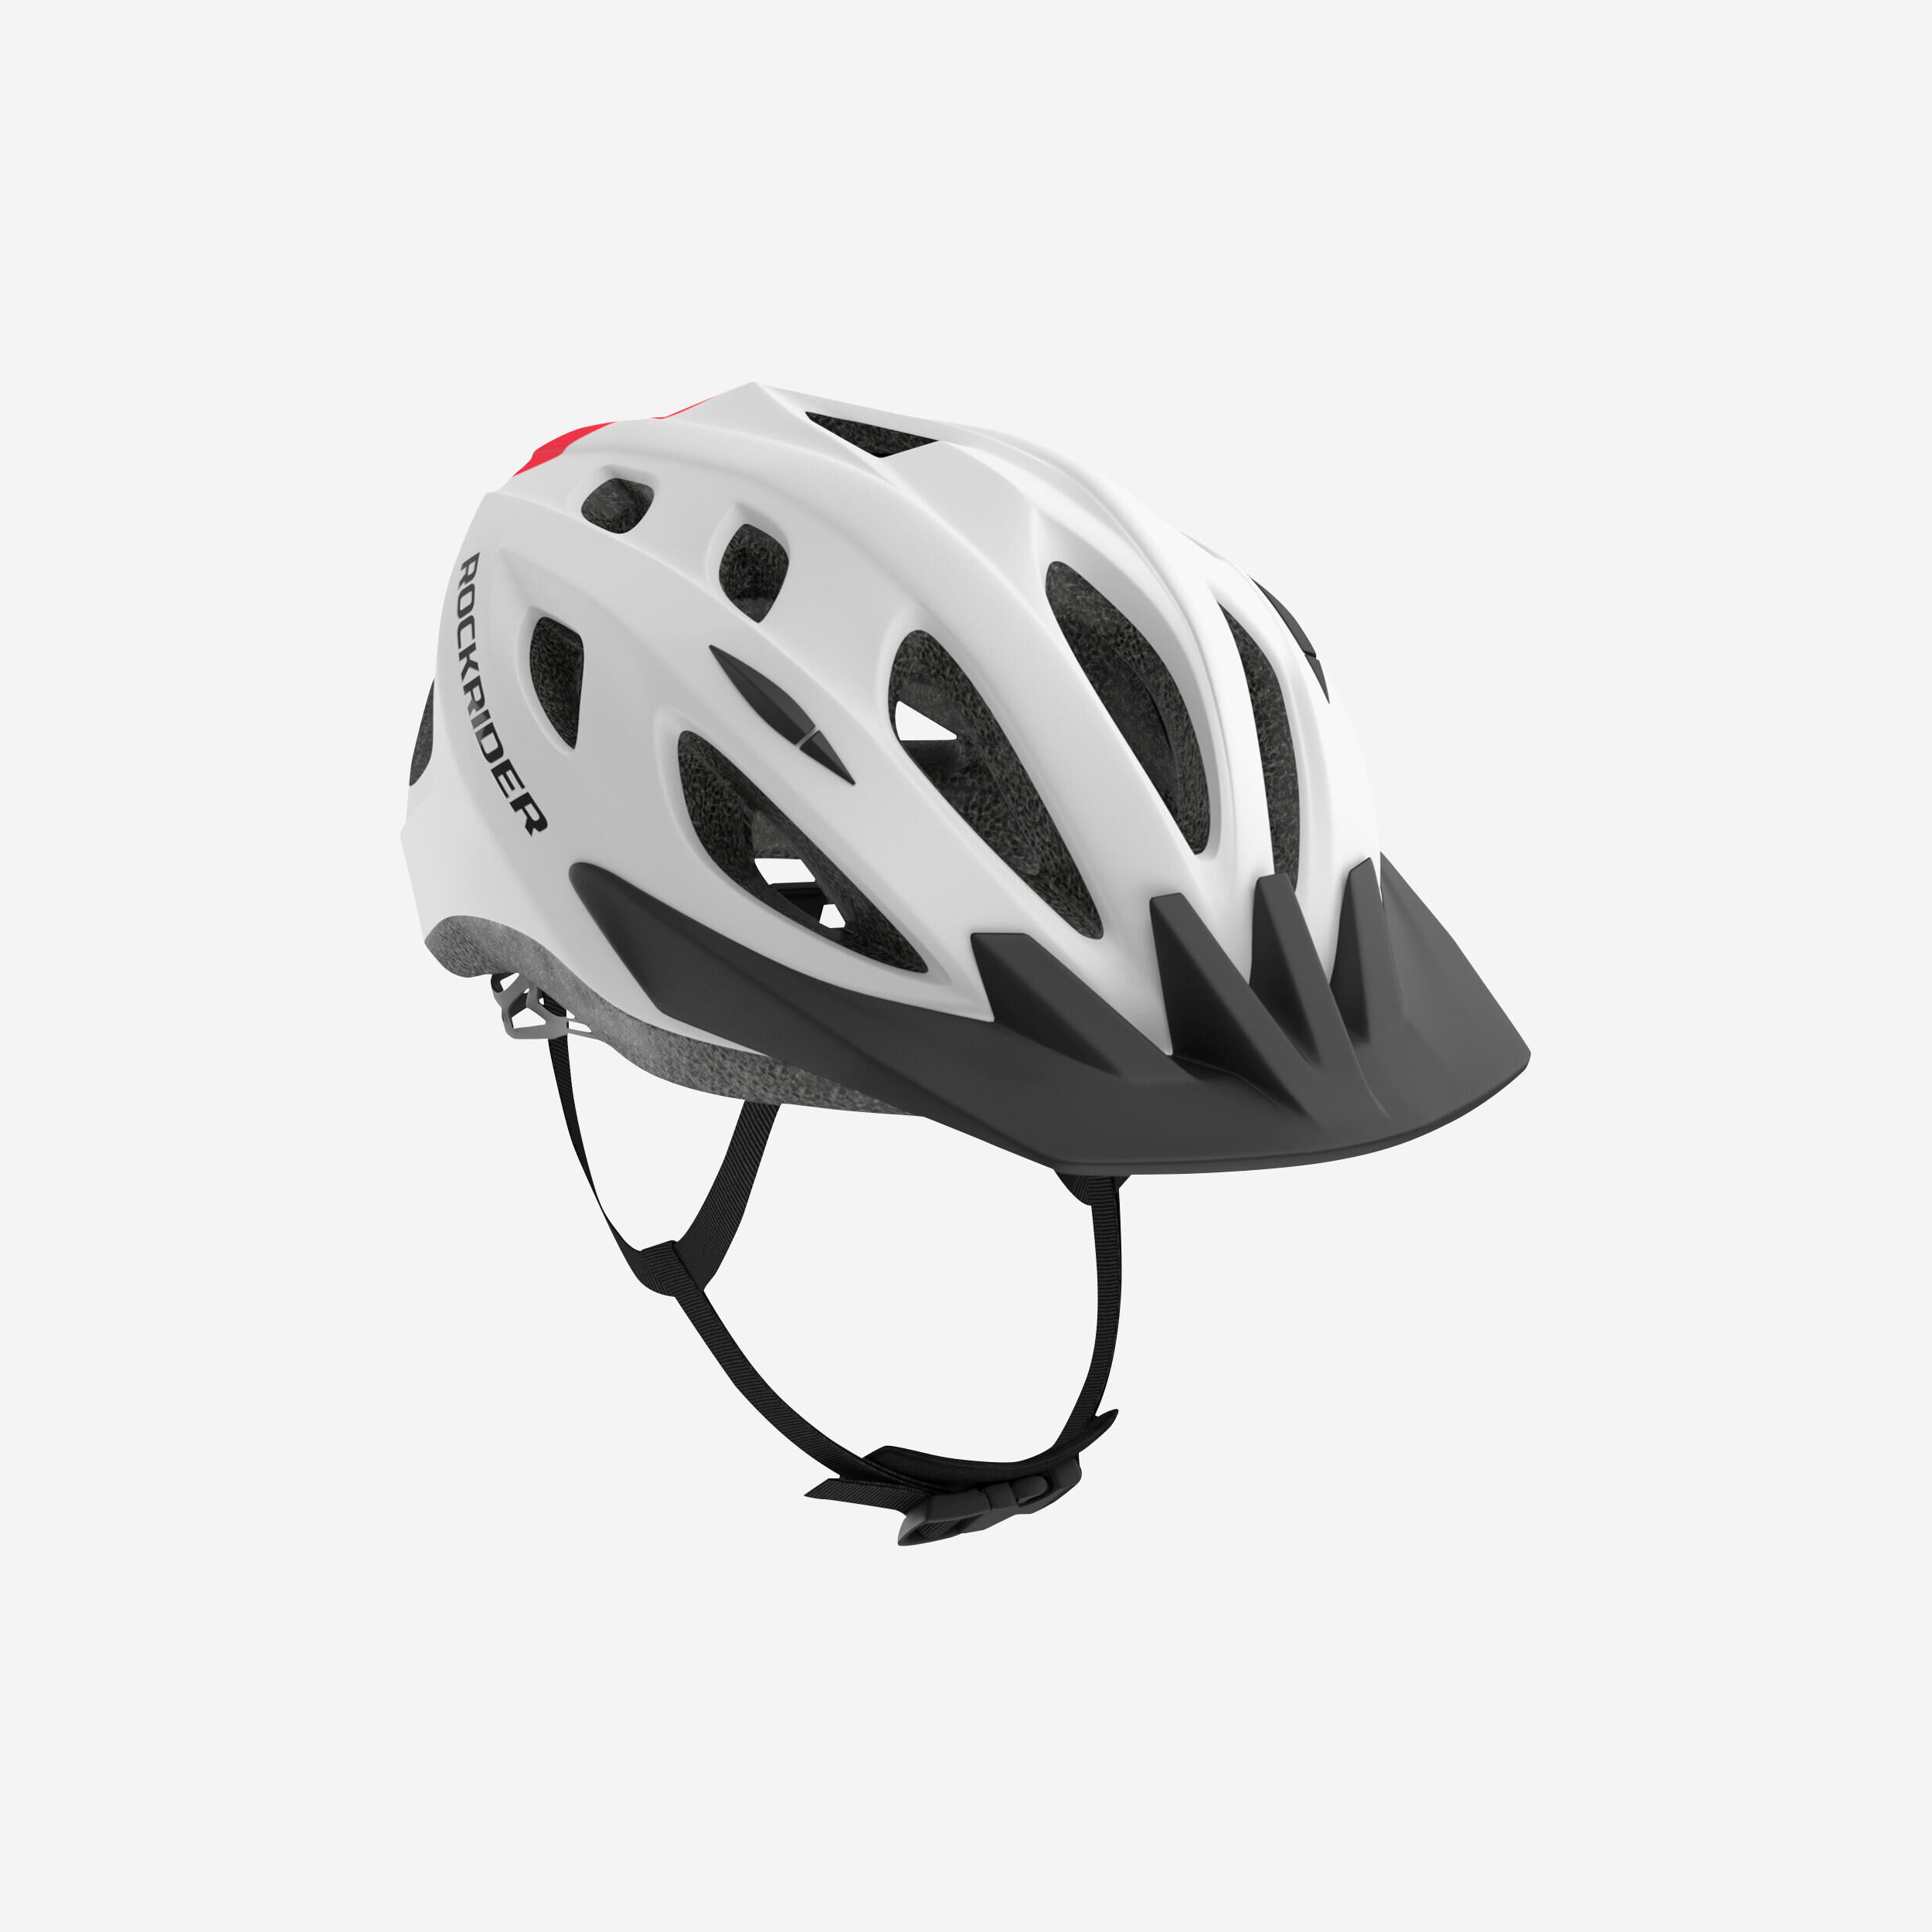 BTWIN Kids' Mountain Bike Helmet 500 - Red